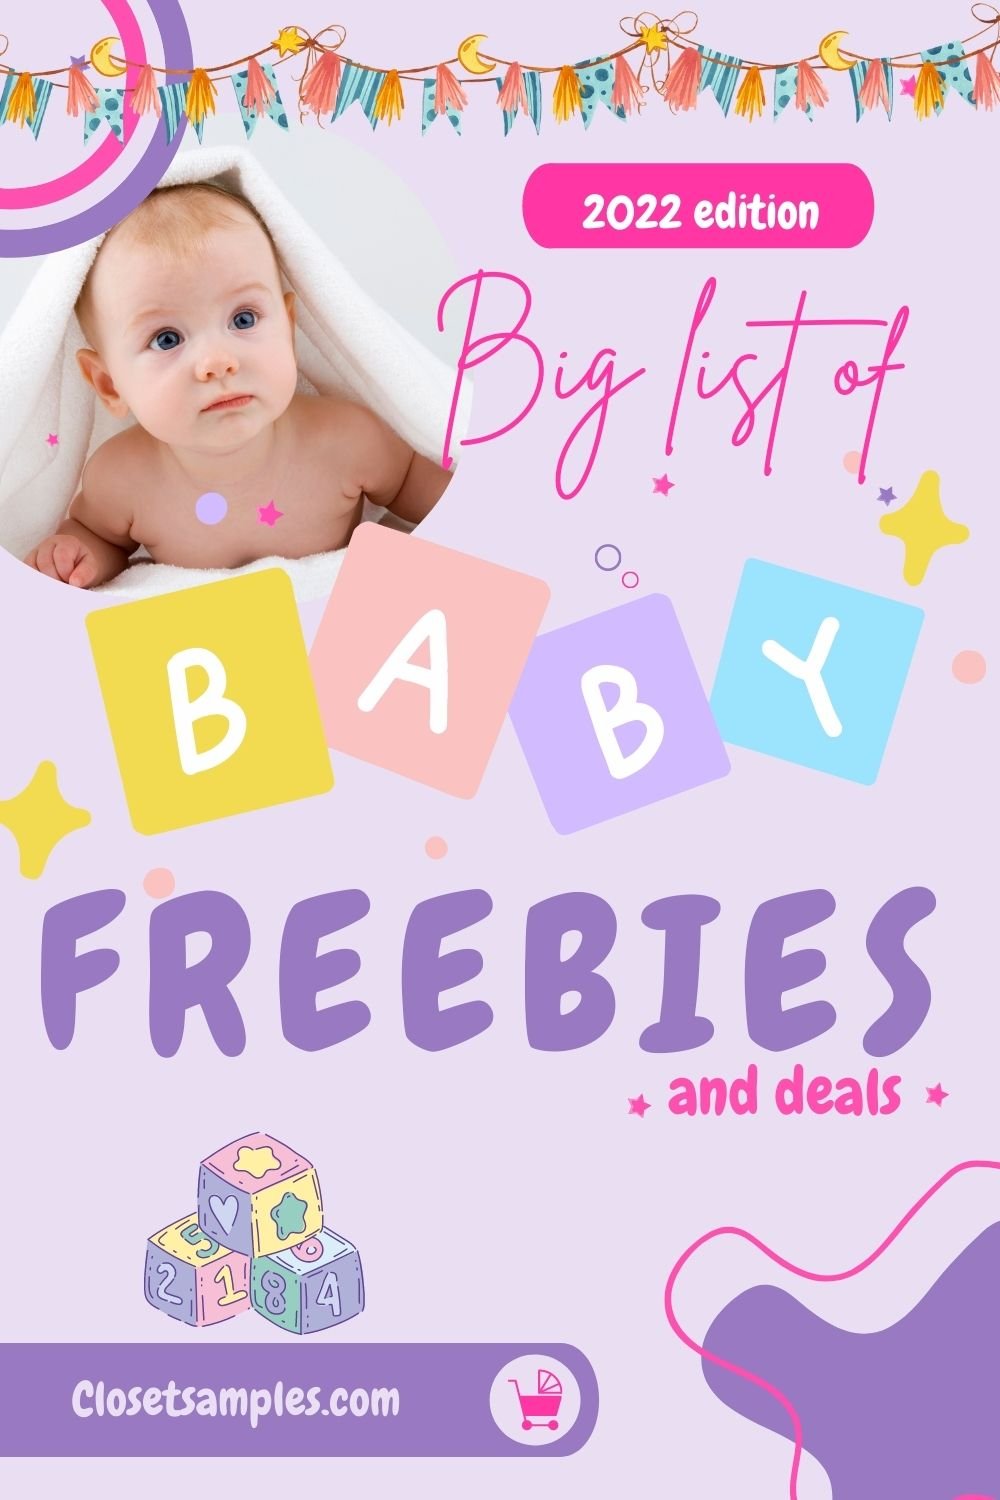 Big List of Baby Freebies Deals 2022 closetsamples Pinterest